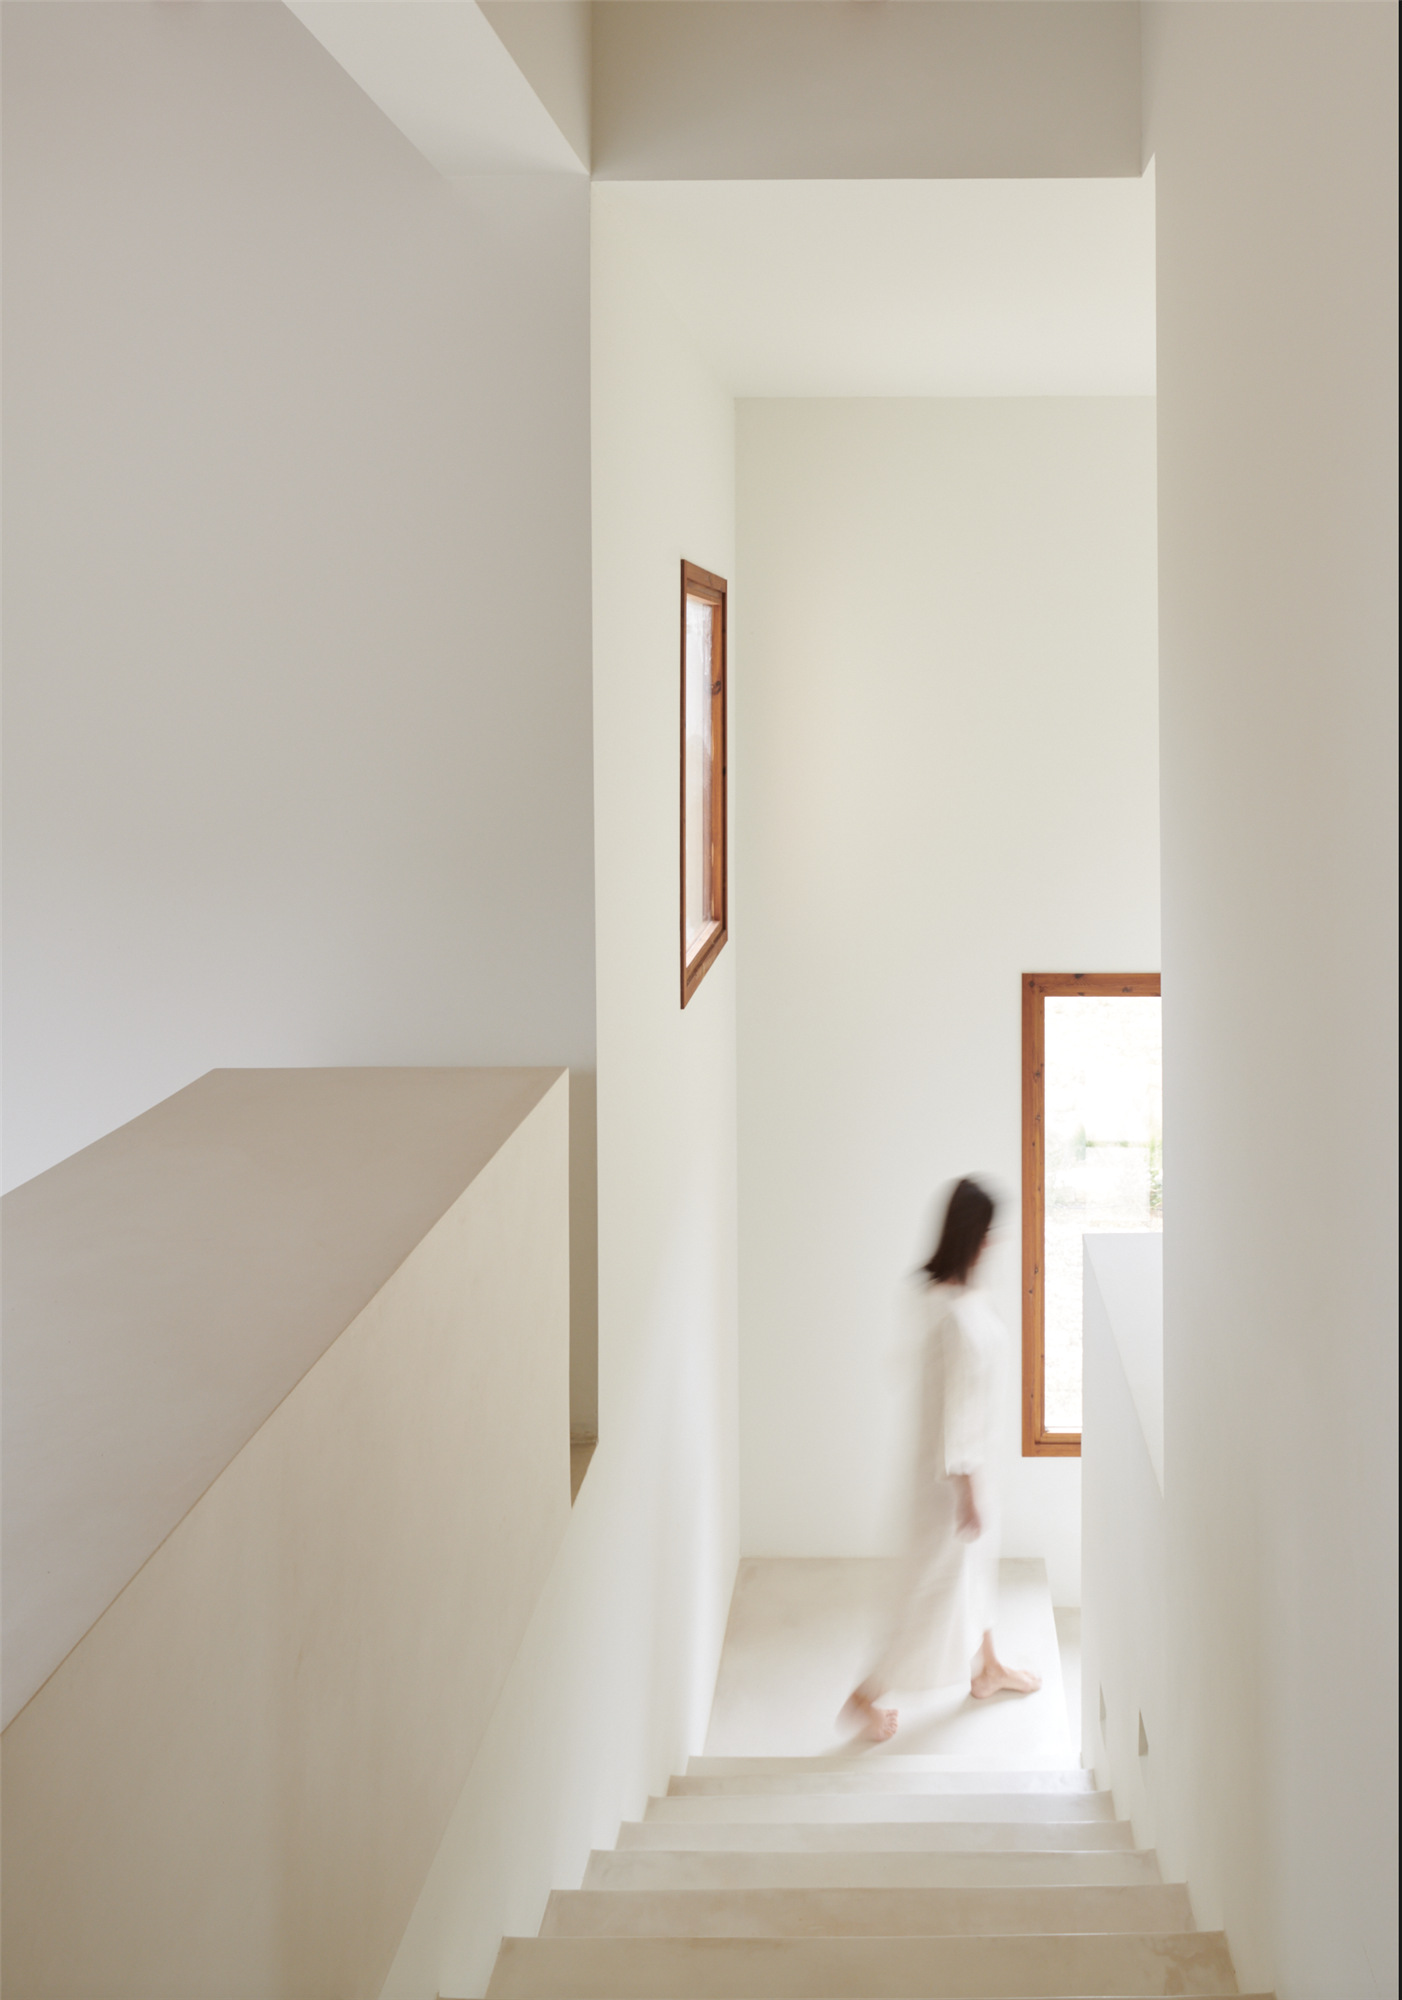 Pasillo con escalera de color blanco de una casa diseñada por el arquitecto Montis Sastre e interiorismo de Jorge Biblioni